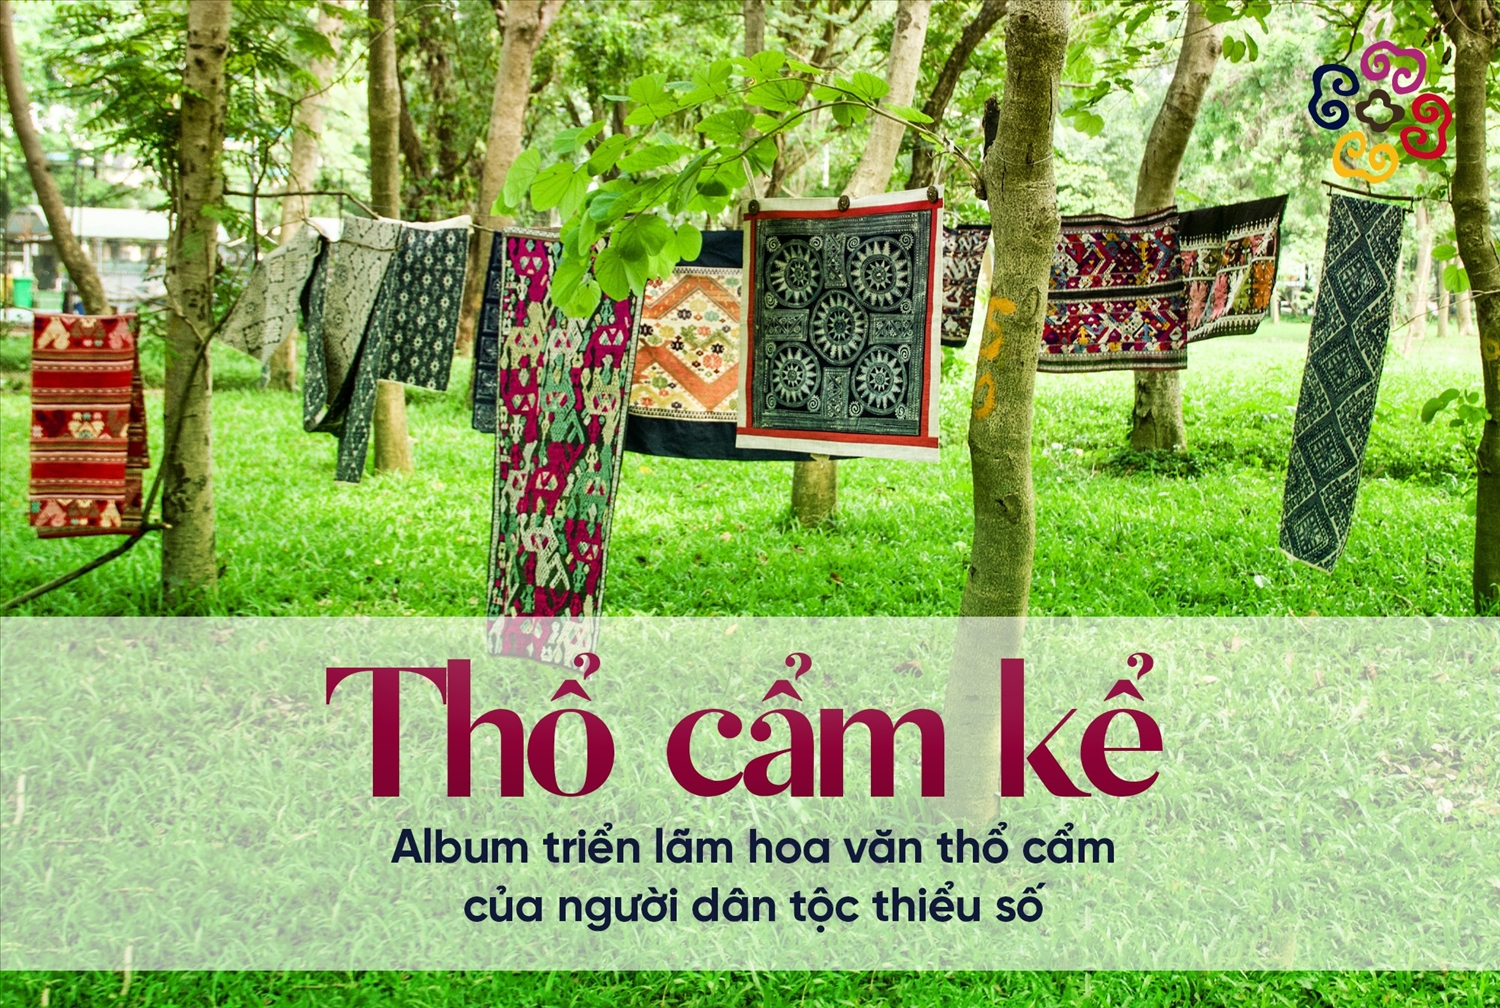 Các hình ảnh về sản phẩm dệt thủ công của bà con đồng bào dân tộc Lào, Thái, Mông được đội ngũ Chie mượn địa điểm để chụp hình, dựng video phục vụ cho hoạt động triển lãm online (nguồn: fanpage Chie – dù pù dù pà ơi)